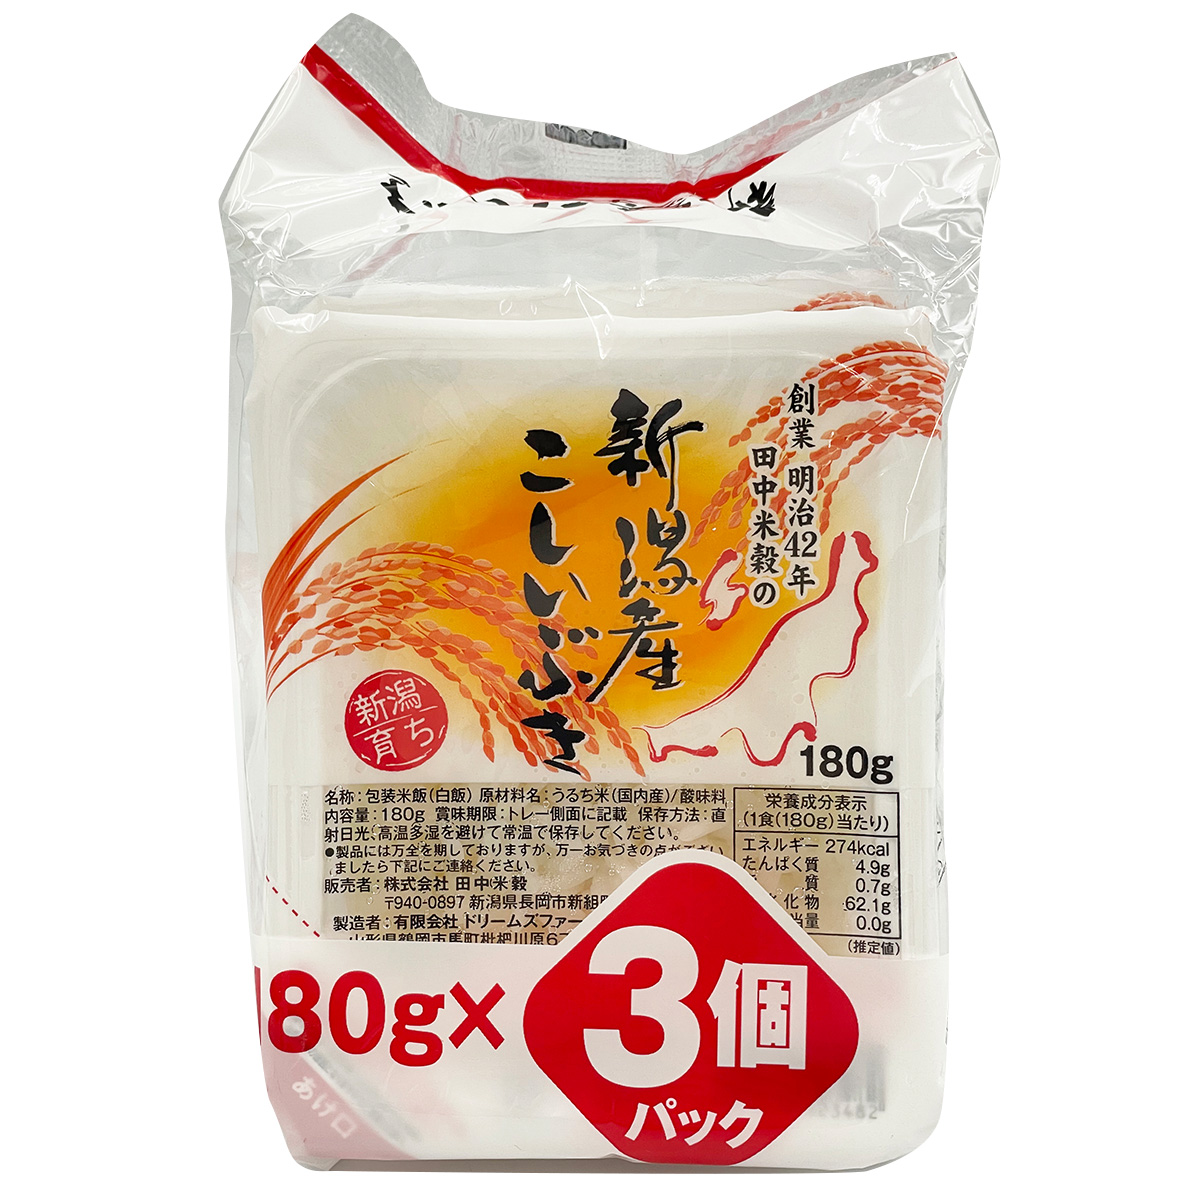 □パックご飯 新潟県産 こしいぶき 180g 3パック入り×8袋 保存食 備蓄